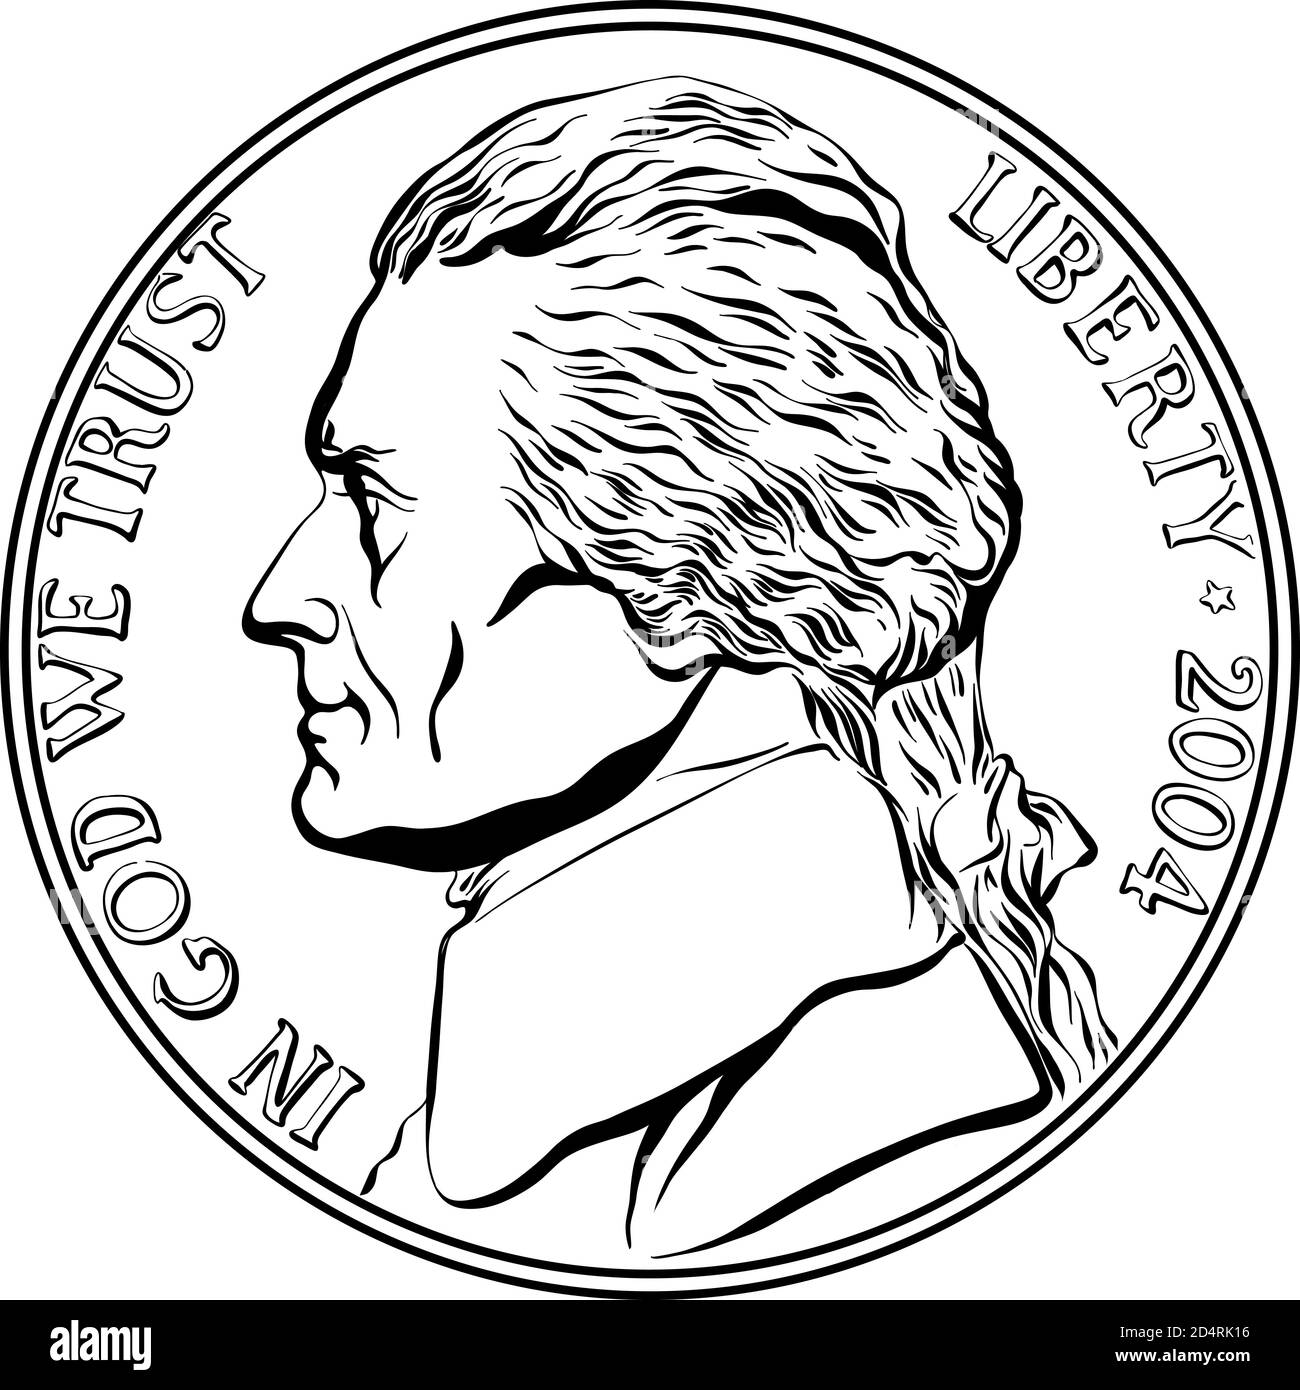 Jefferson Nickel, American Money, USA fünf-Cent-Münze mit Jefferson, dem dritten Präsidenten der USA auf der Vorderseite. Schwarzweiß-Bild Stock Vektor